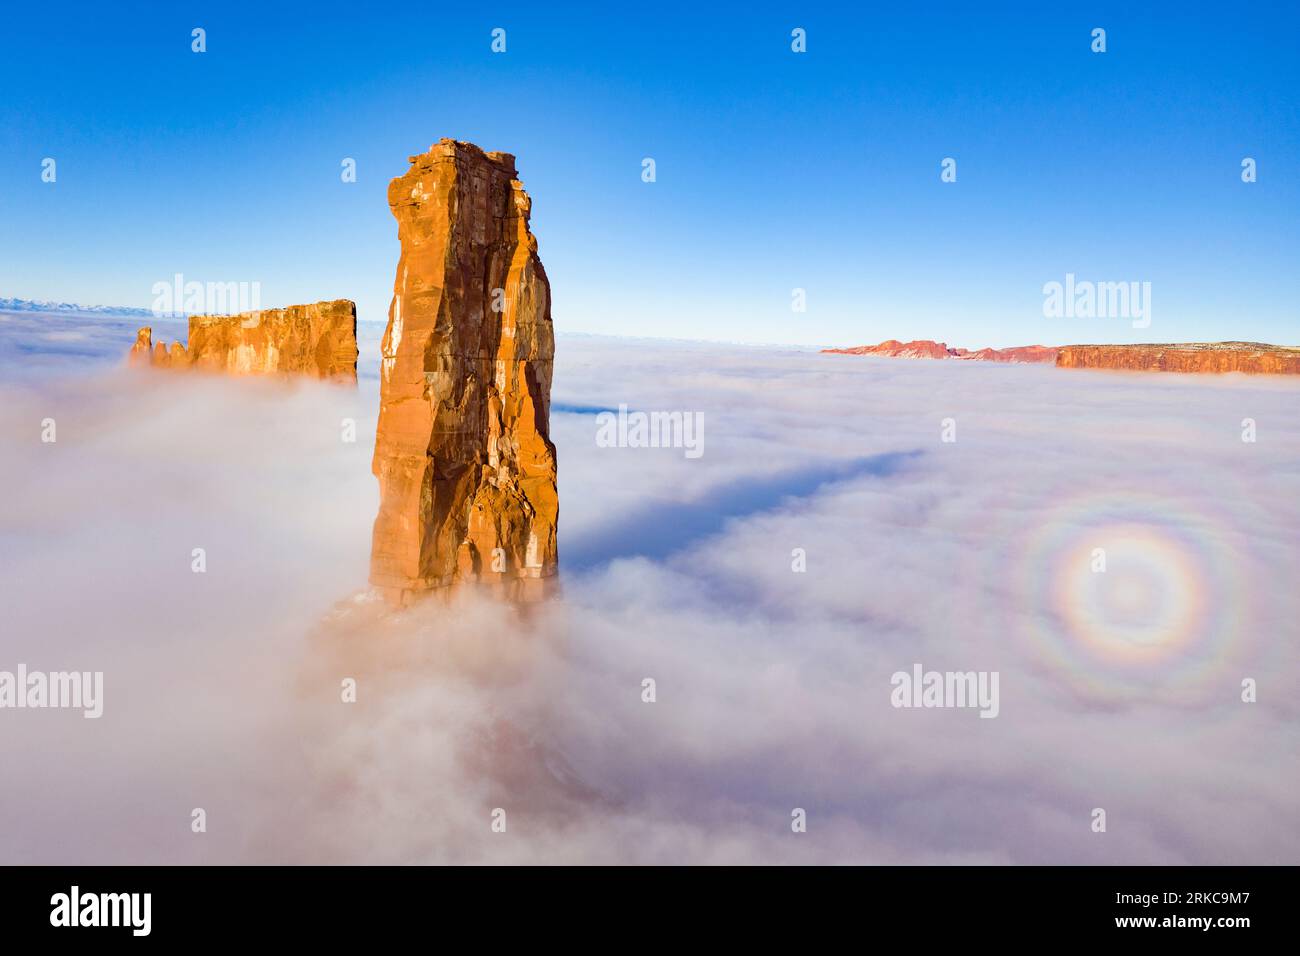 Castle Rock s'élève au-dessus du brouillard hivernal, Castle Vallery Utah, près de Moab, Coloraod River, Une «gloire» de la lumière du soleil sur le brouillard apparaît Banque D'Images